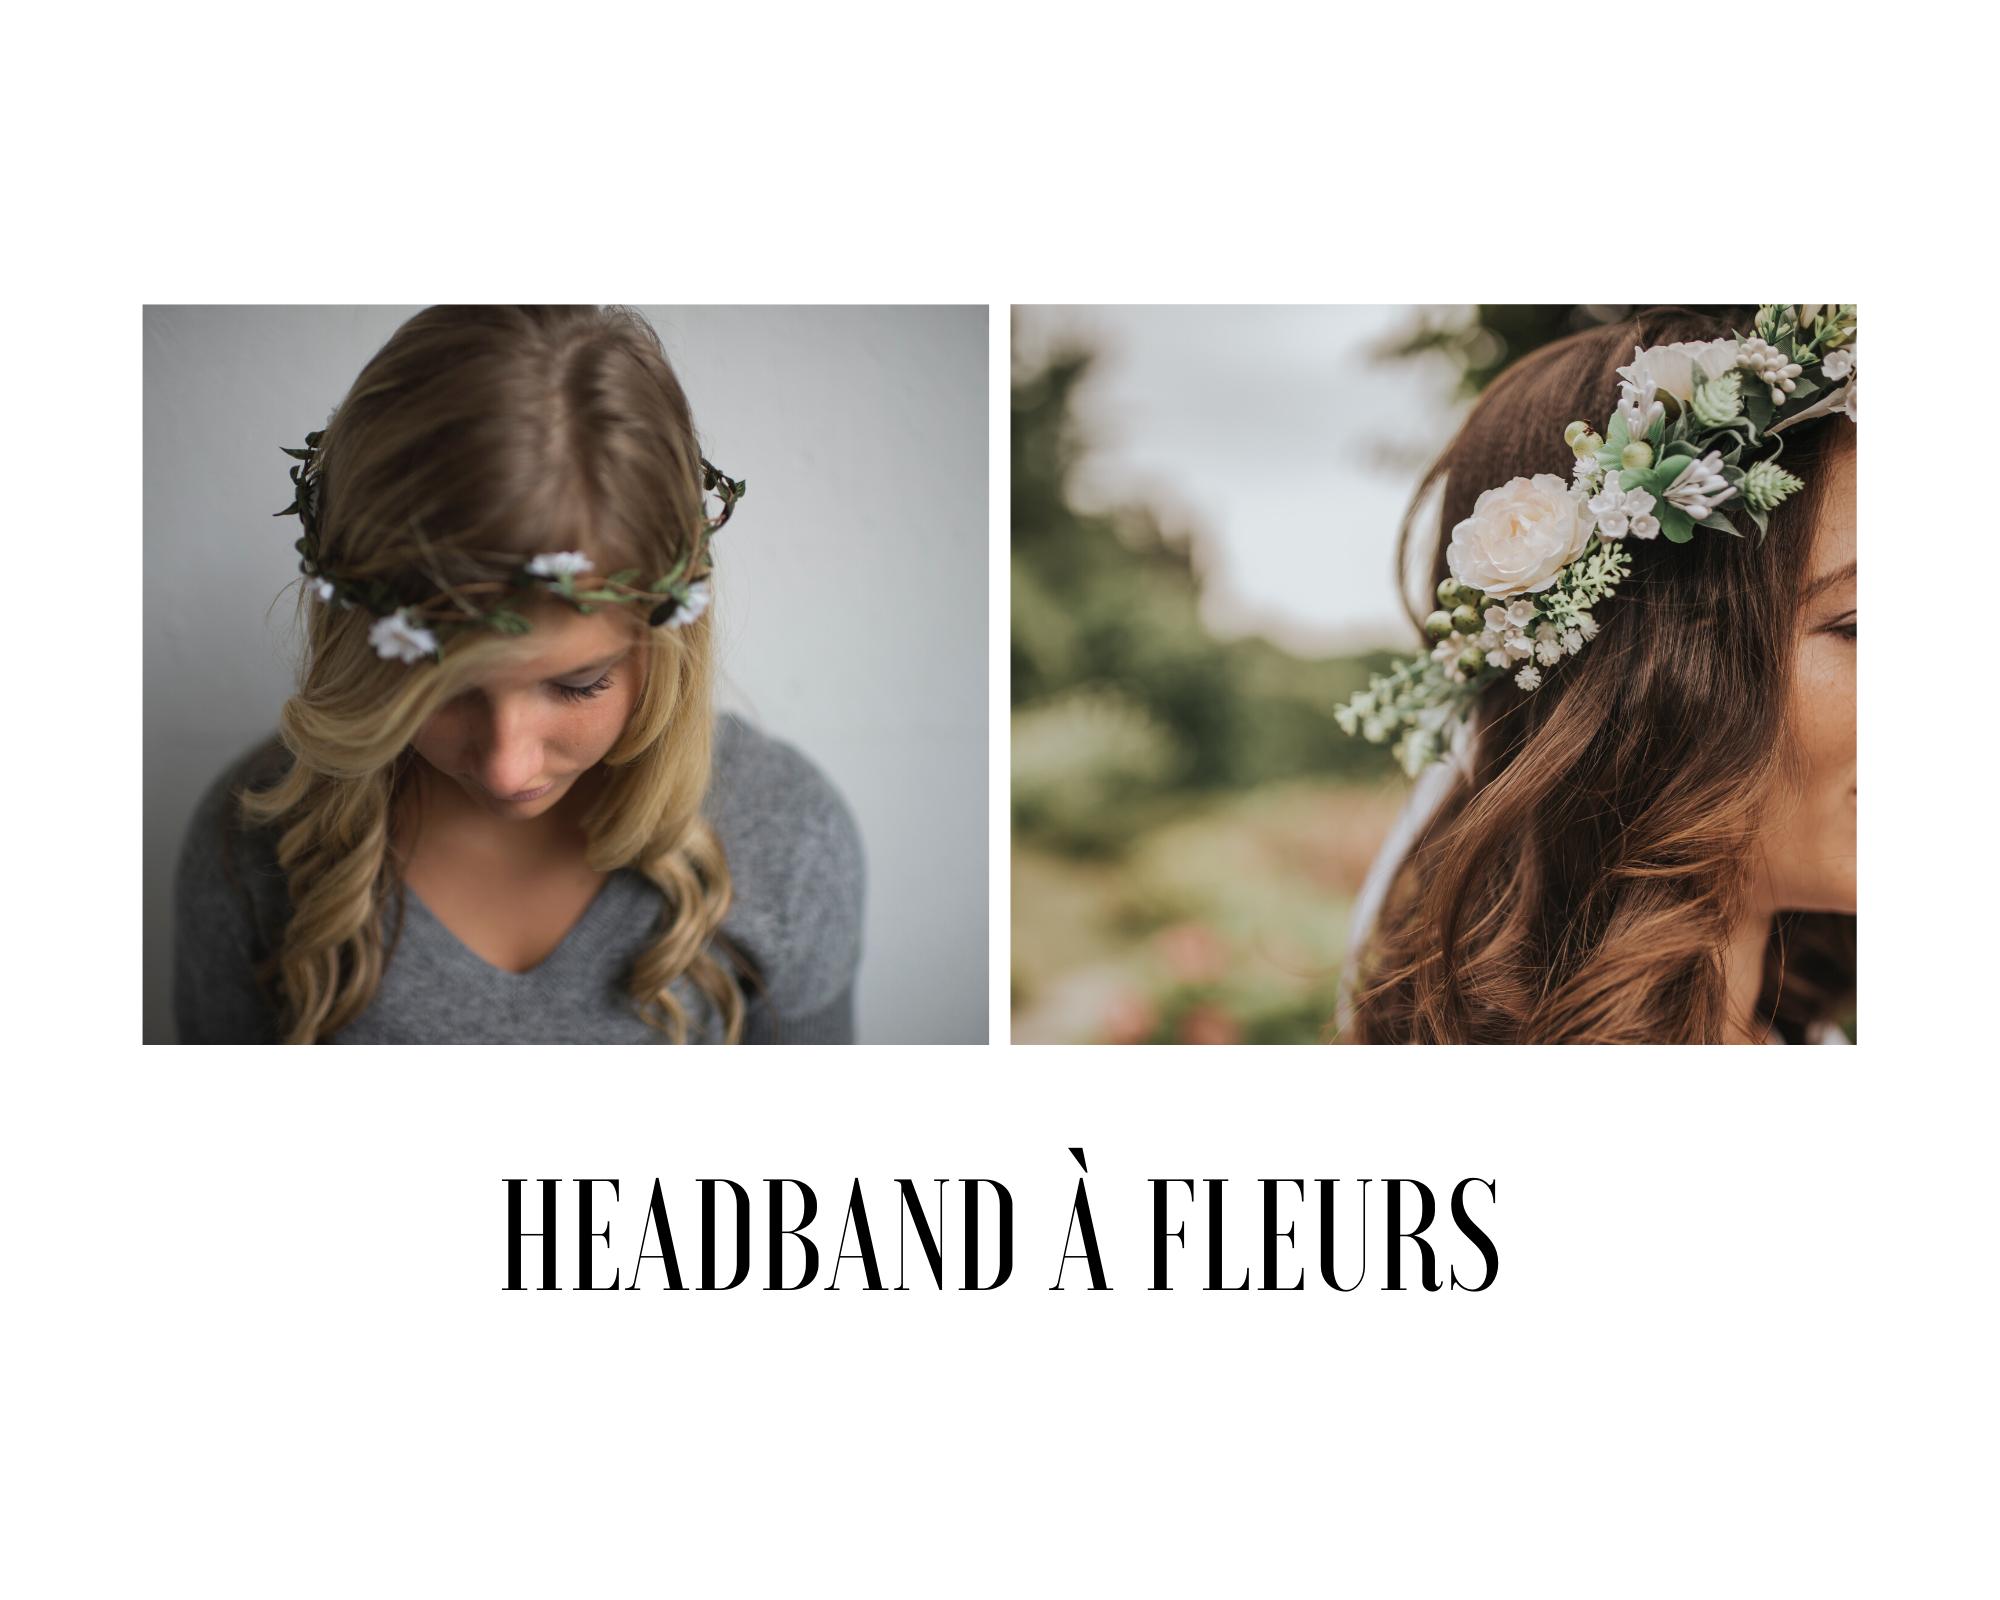 tendance 2020 : headband à fleurs pour les mariages 